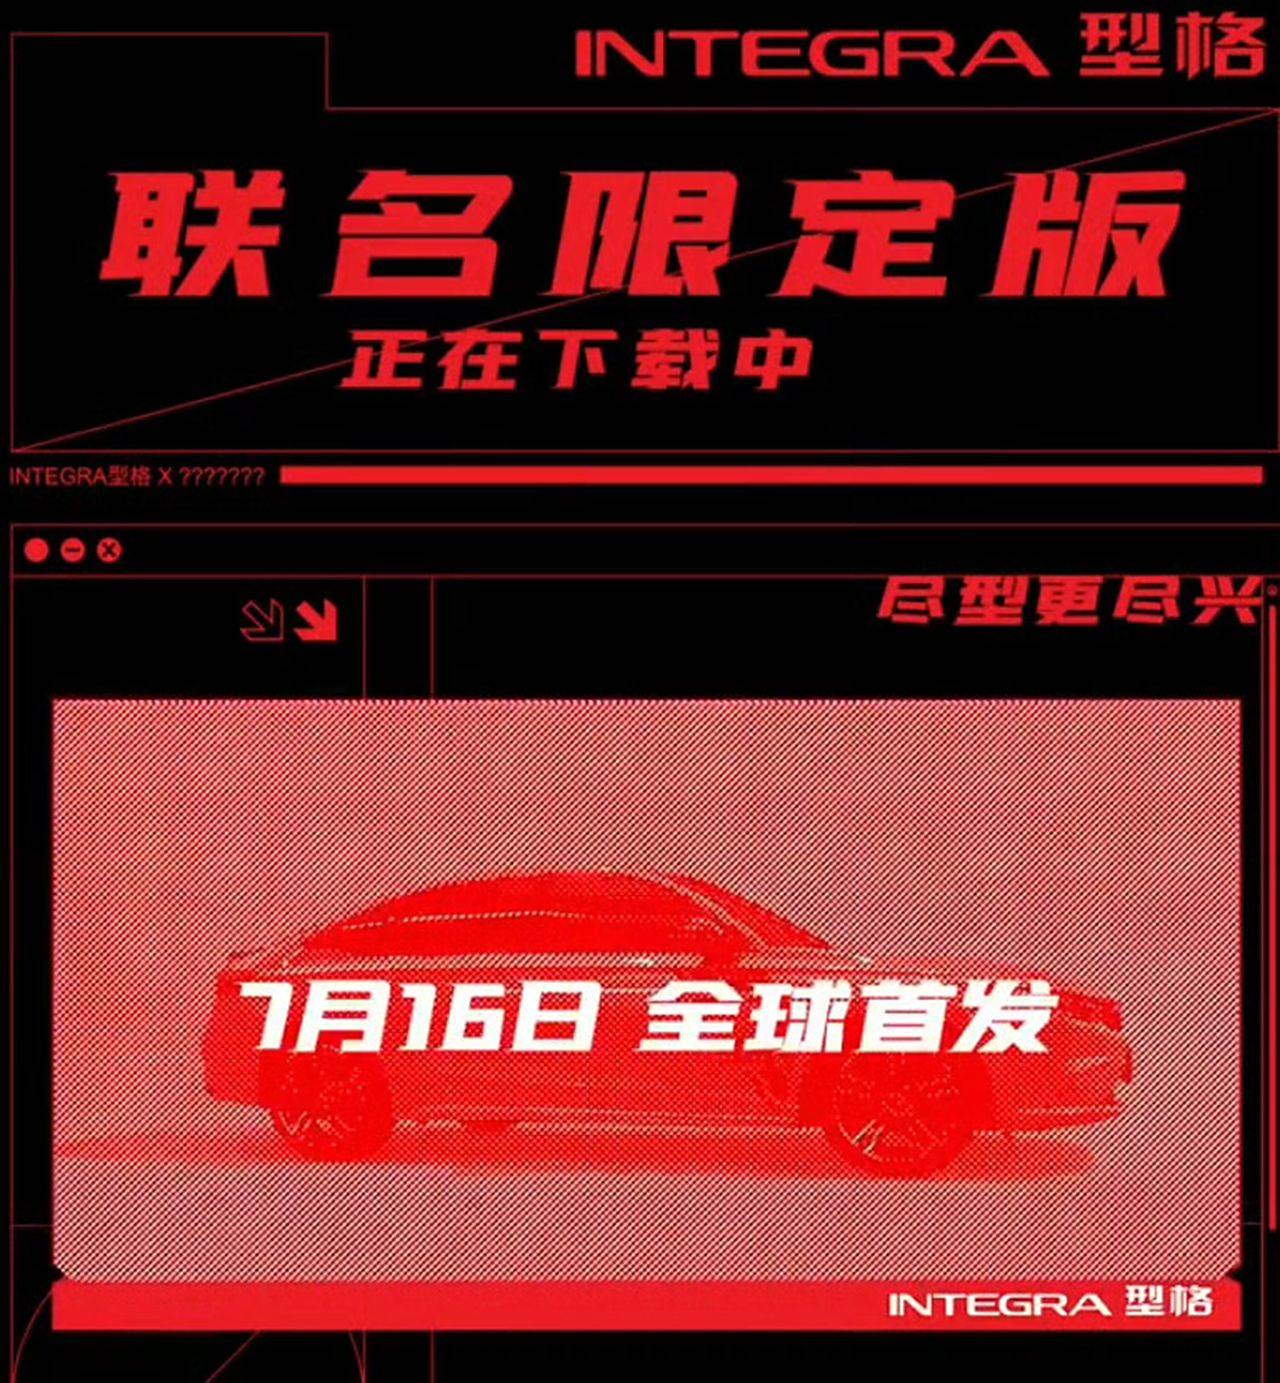 预计外观会升级。广汽本田联合限量版将于7月16日发布。_搜狐汽车_ Sohu.com。